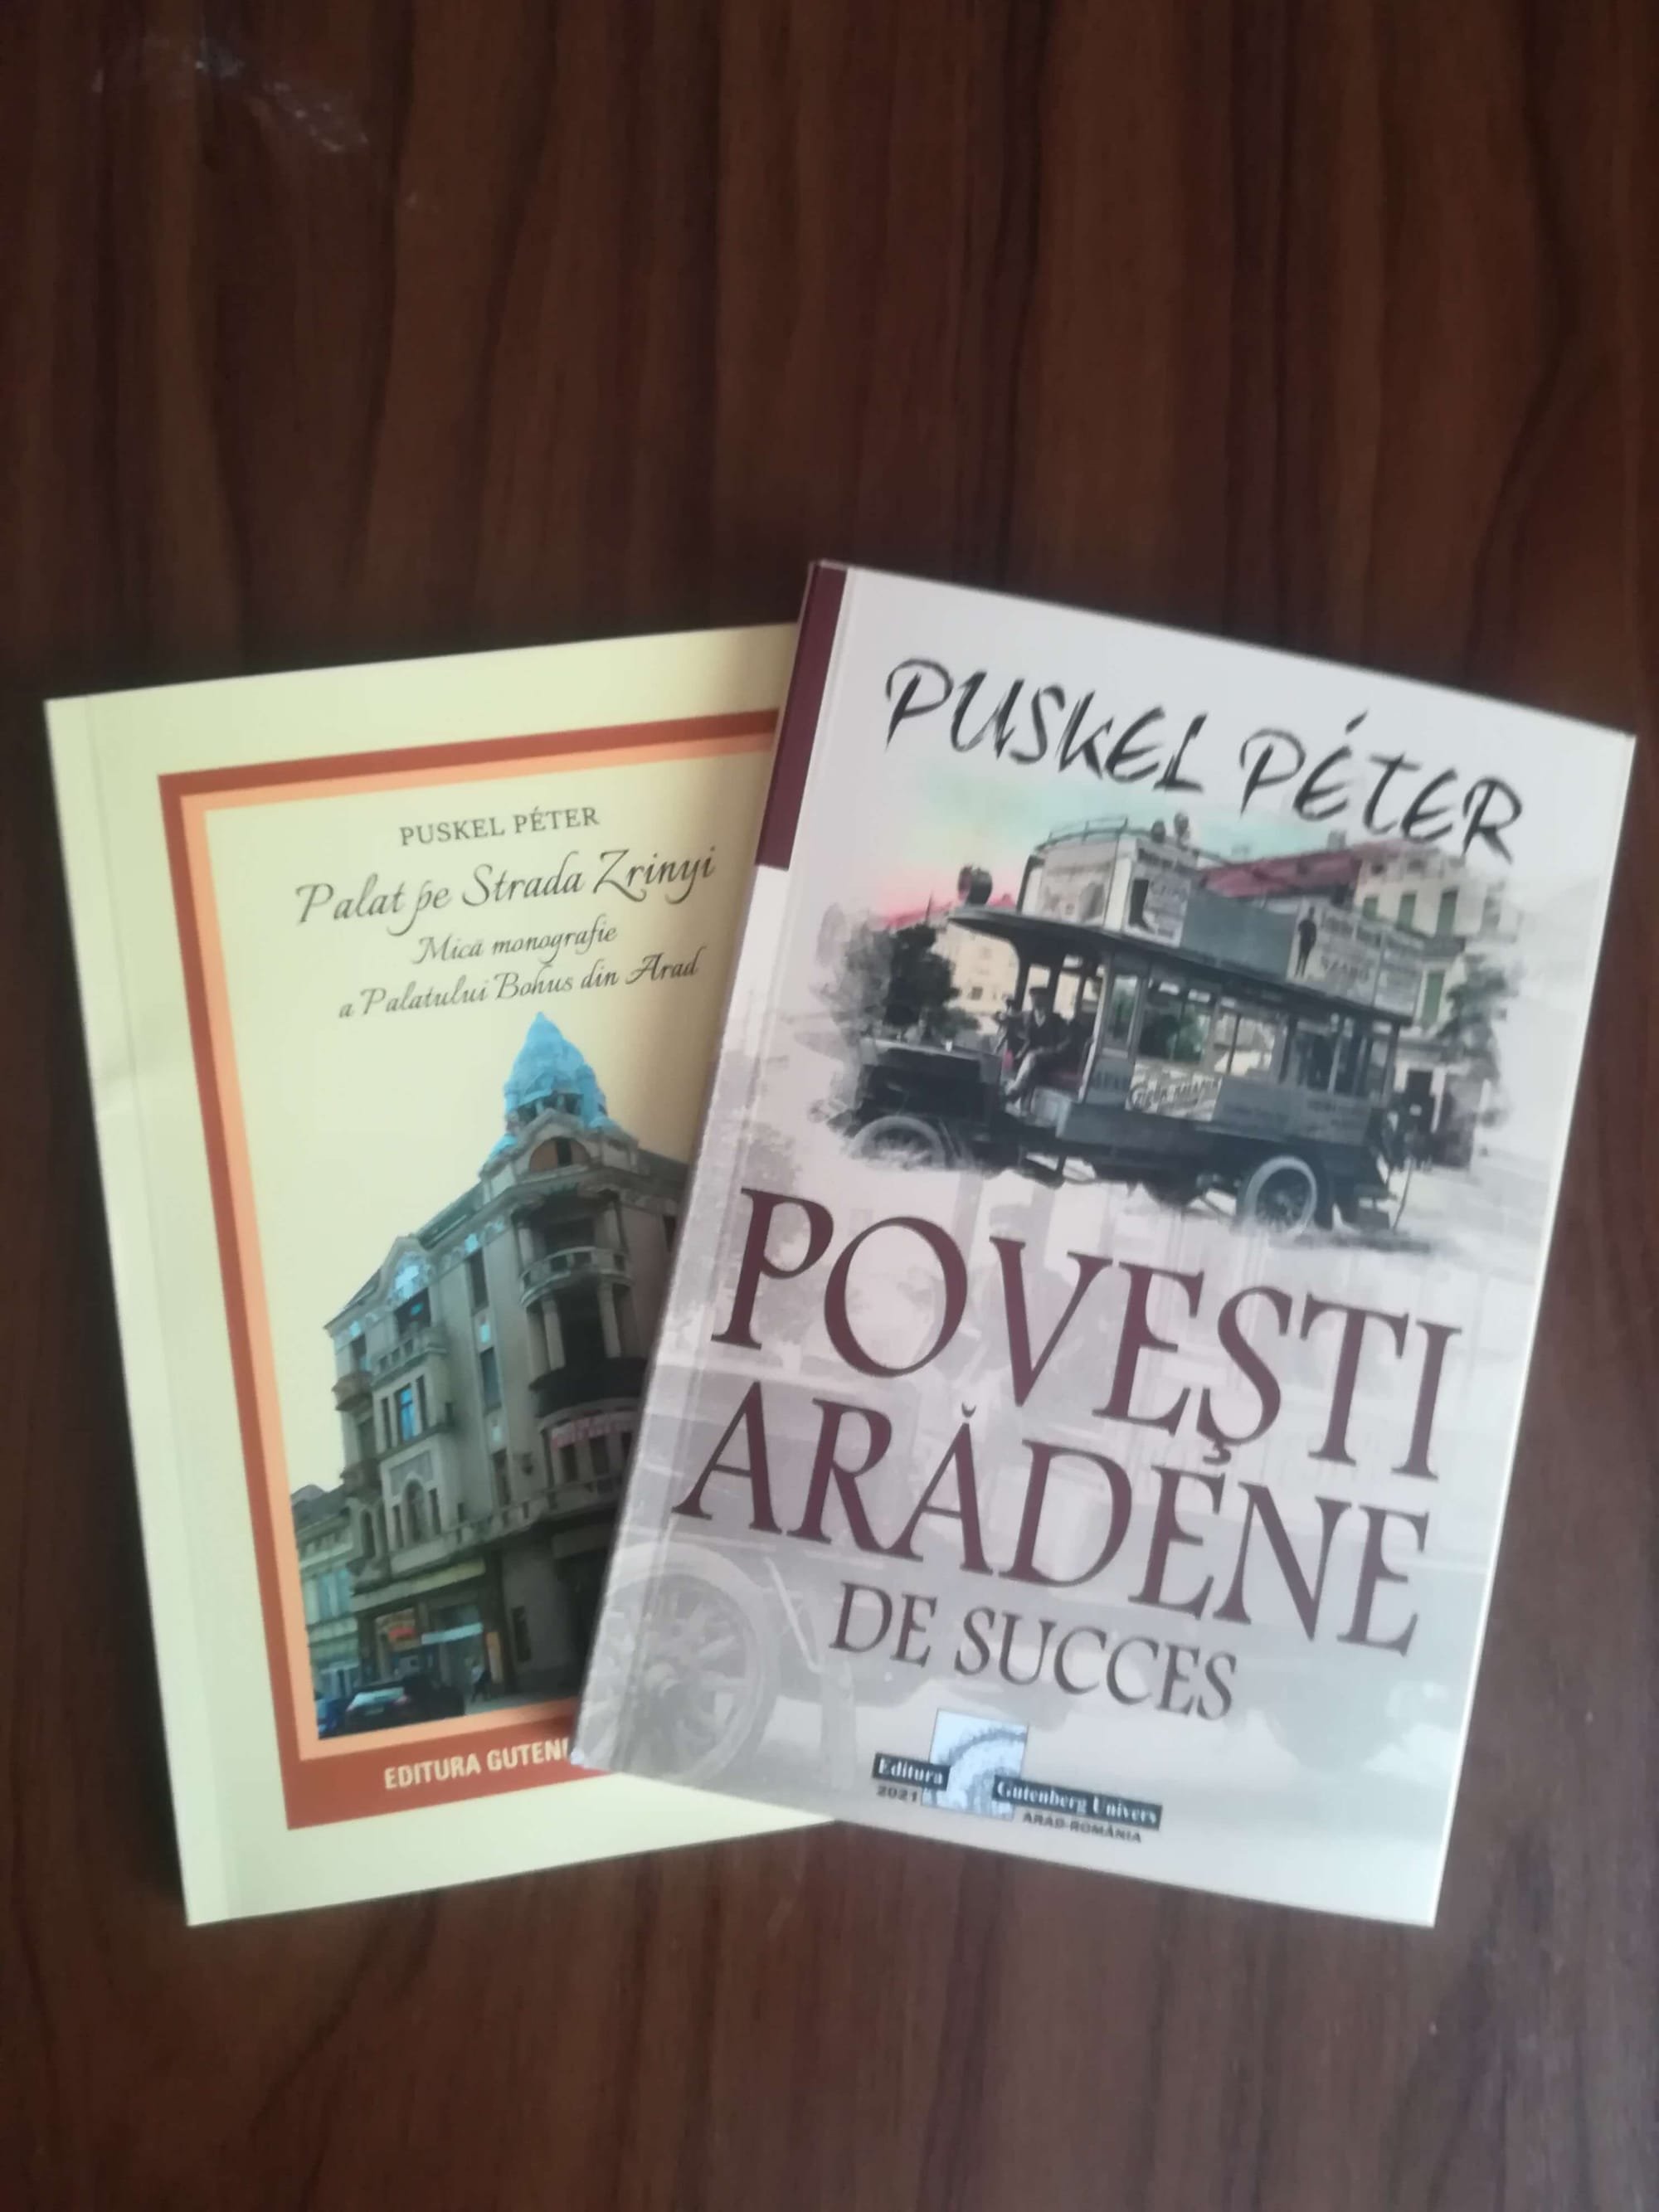 Descărcați aici cărțile "Povești arădene de succes" și "Palat pe strada Zrinyi. Mică monografie a Palatului Bohus din Arad" în format PDF